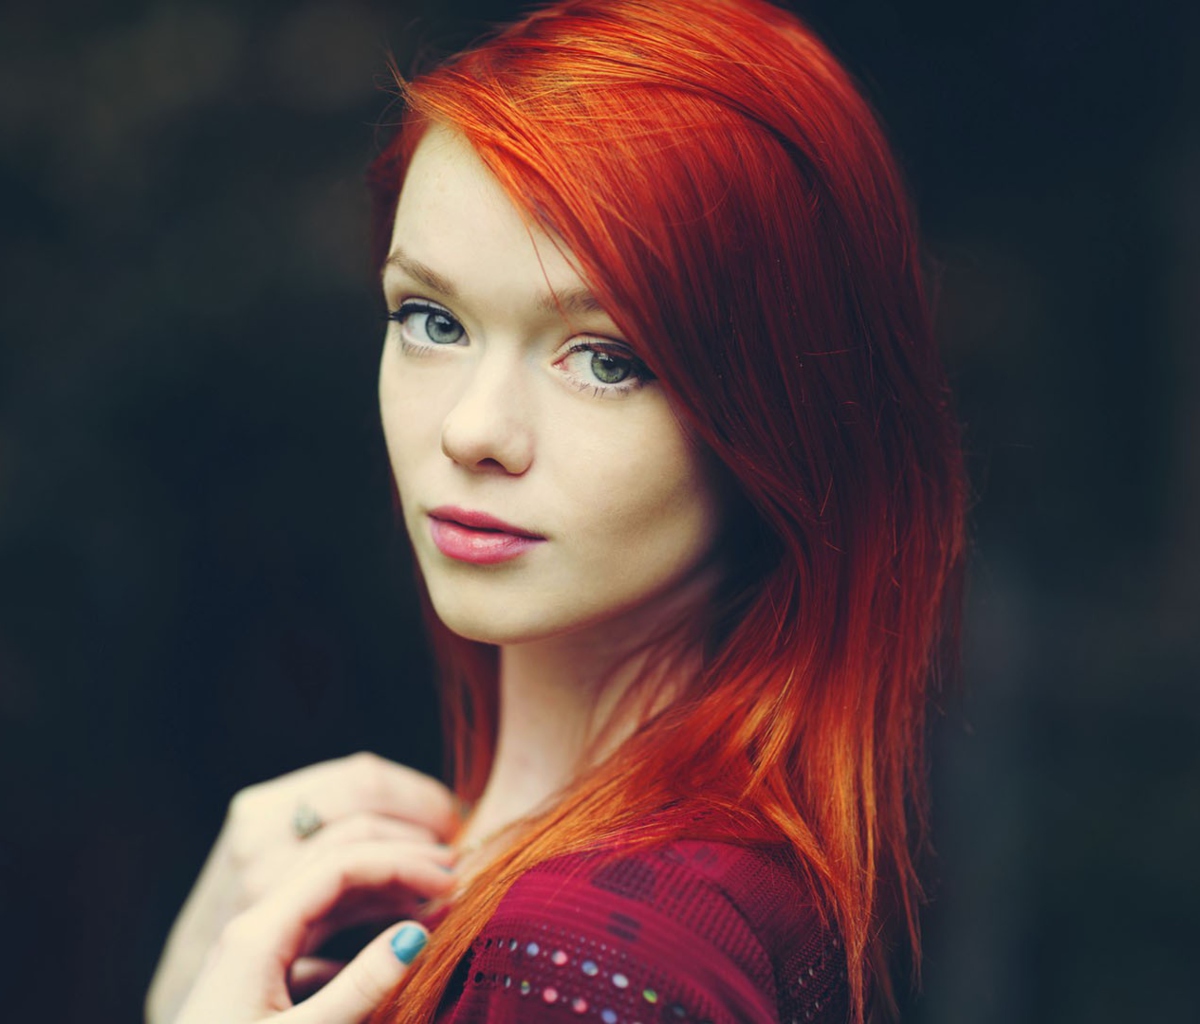 Das Redhead Girl Wallpaper 1200x1024